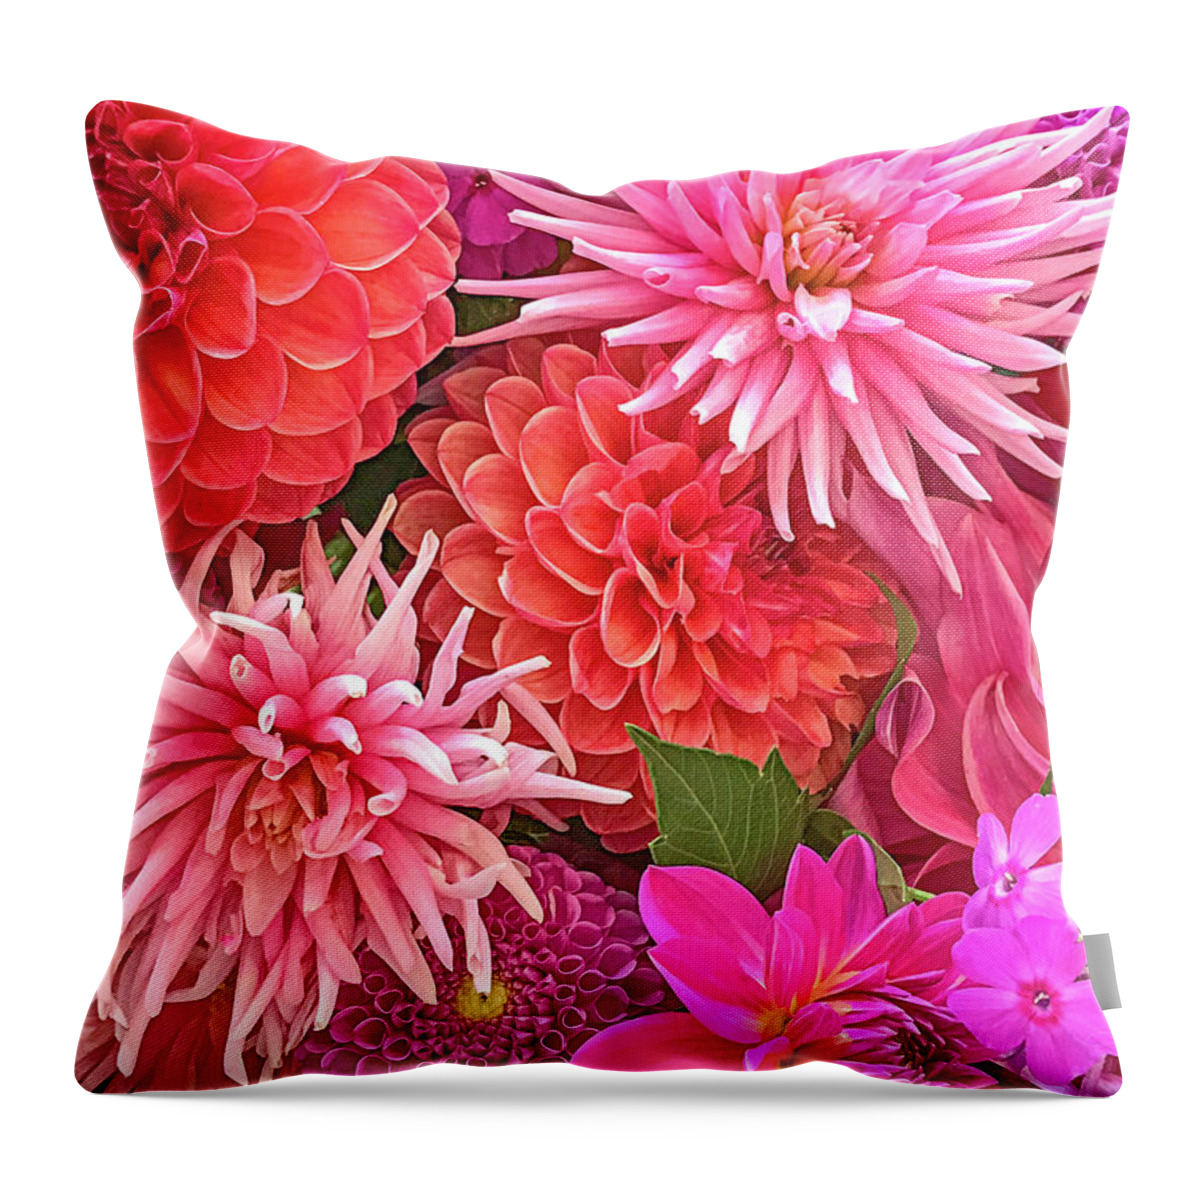 Dahlias Throw Pillow featuring the photograph Garden Beauties by Jill Love